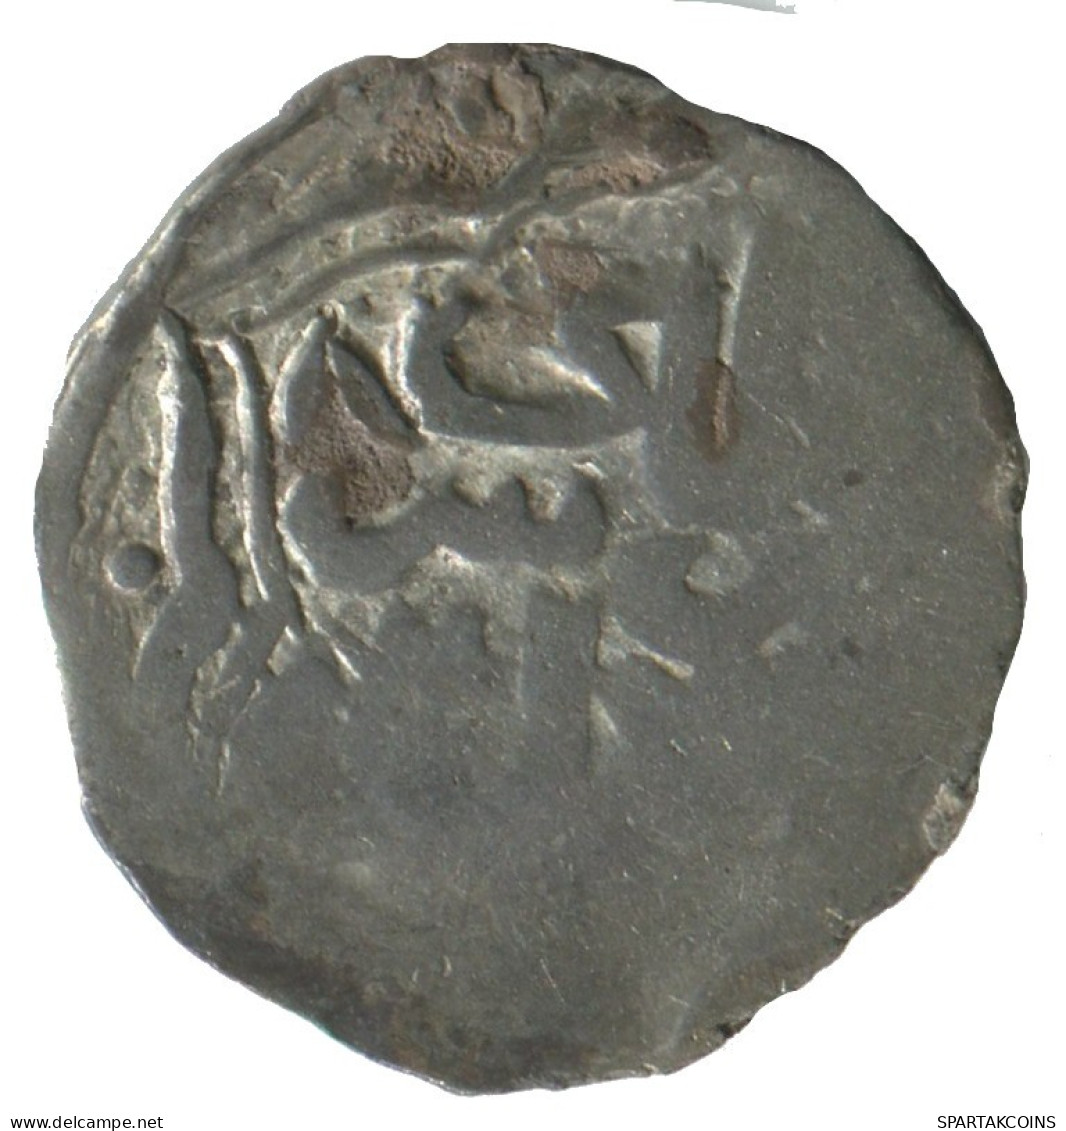 GOLDEN HORDE Silver Dirham Medieval Islamic Coin 1.4g/16mm #NNN1999.8.E.A - Islamische Münzen